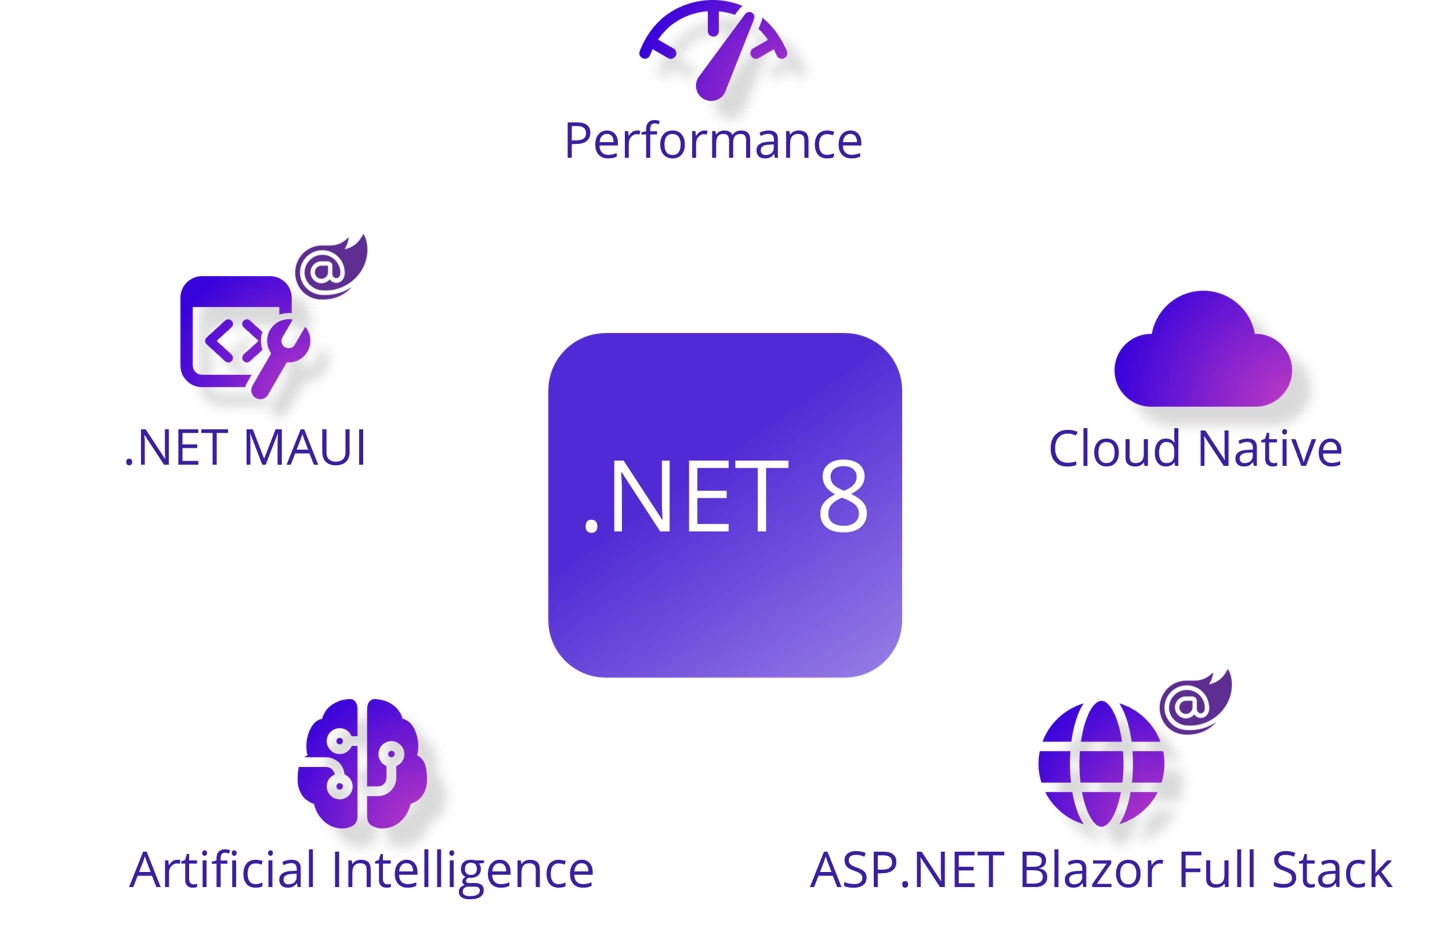 微软发布 .NET 8 开源开发平台：引入 PGO、AVX-512 支持，性能提升 20%